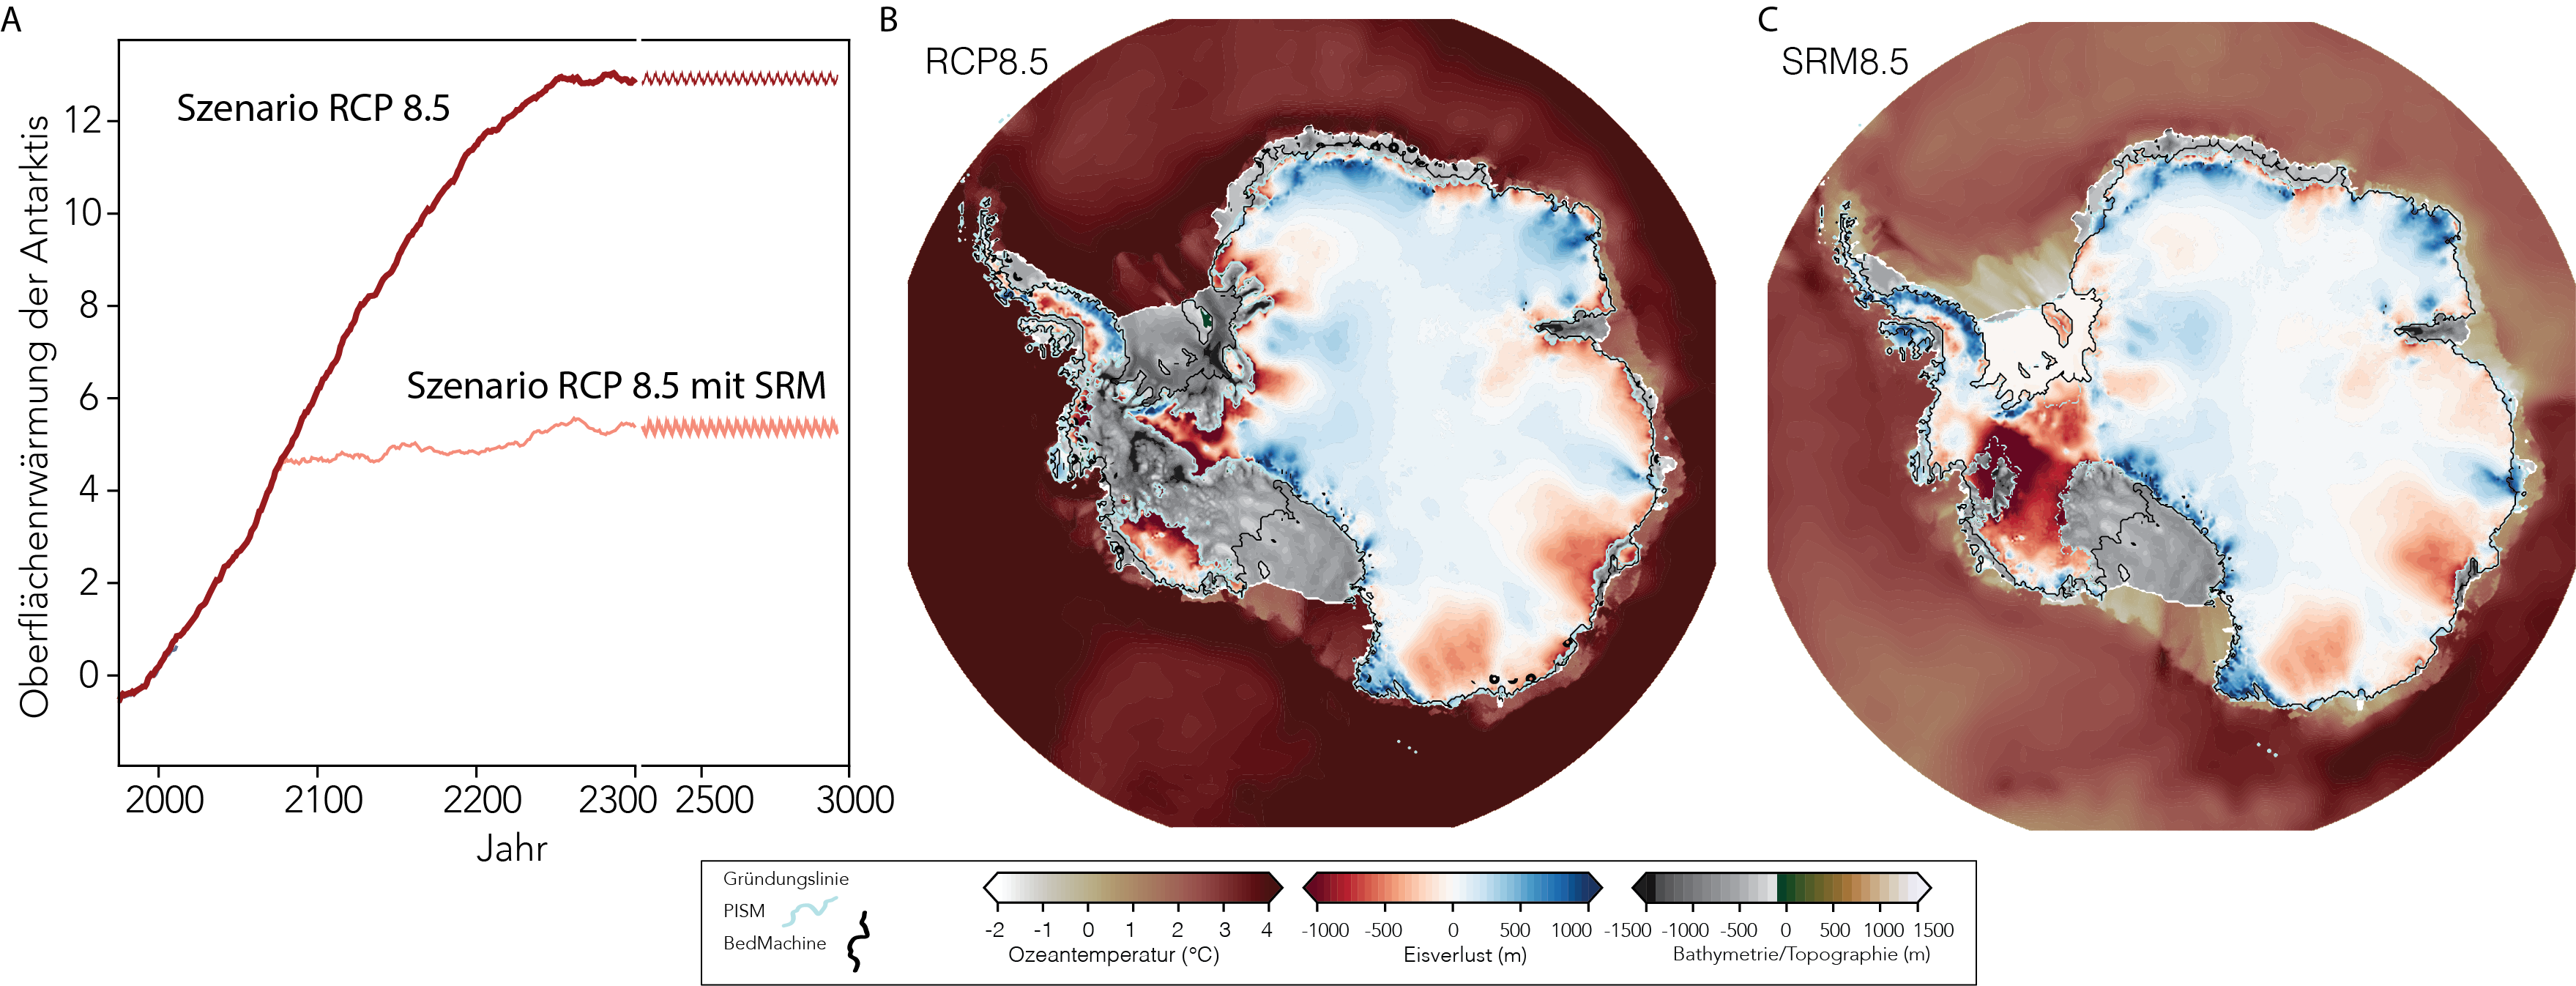 Temperaturänderungen in der Antarktis und Antarktischer Masseverlust in verschiedenen Klima- und Geoengineering-Szenarien: Abbildung A zeigt Veränderungen der Antarktischen Oberflächentemperatur im Szenario RCP8.5 (dies entspricht einem einem kompletten Versagen der Klimapolitik) sowie dem Geoengineering-Szenario SRM85-80 (Beginn der SRM-Massnahmen im Jahre 2080). Abbildungen B/C zeigen die korrespondierende Veränderung der Eismächtigkeit (Höhe des Eises, rot bedeutet Eisverlust, blau Eiswachstum) und den Rückzug des Eises (Gründungslinie) in den Szenarien RCP8.5 und SRM85-80. Die grauen Gebiete zeigen Flächen in welchem das Eis komplett verloren gegangen ist, die Ozeantemperatur ist ebenfalls angegeben. Um die Temperatur mittels SRM in RCP8.5 dauerhaft zu stabilisieren müsste jährlich 2-3 mal so viel Schwefeldioxid in die Stratosphäre eingebracht werden als durch die Eruption des Vulkan Pinatubo im Jahre 1991 – dem zweitgrössten Vulkanausbruch des 20. Jahrhunderts, in dessen Folge die globale Durchschnittstemperatur während rund eines Jahres um etwa 0.5 Grad Celsius sank. Bild: zvg